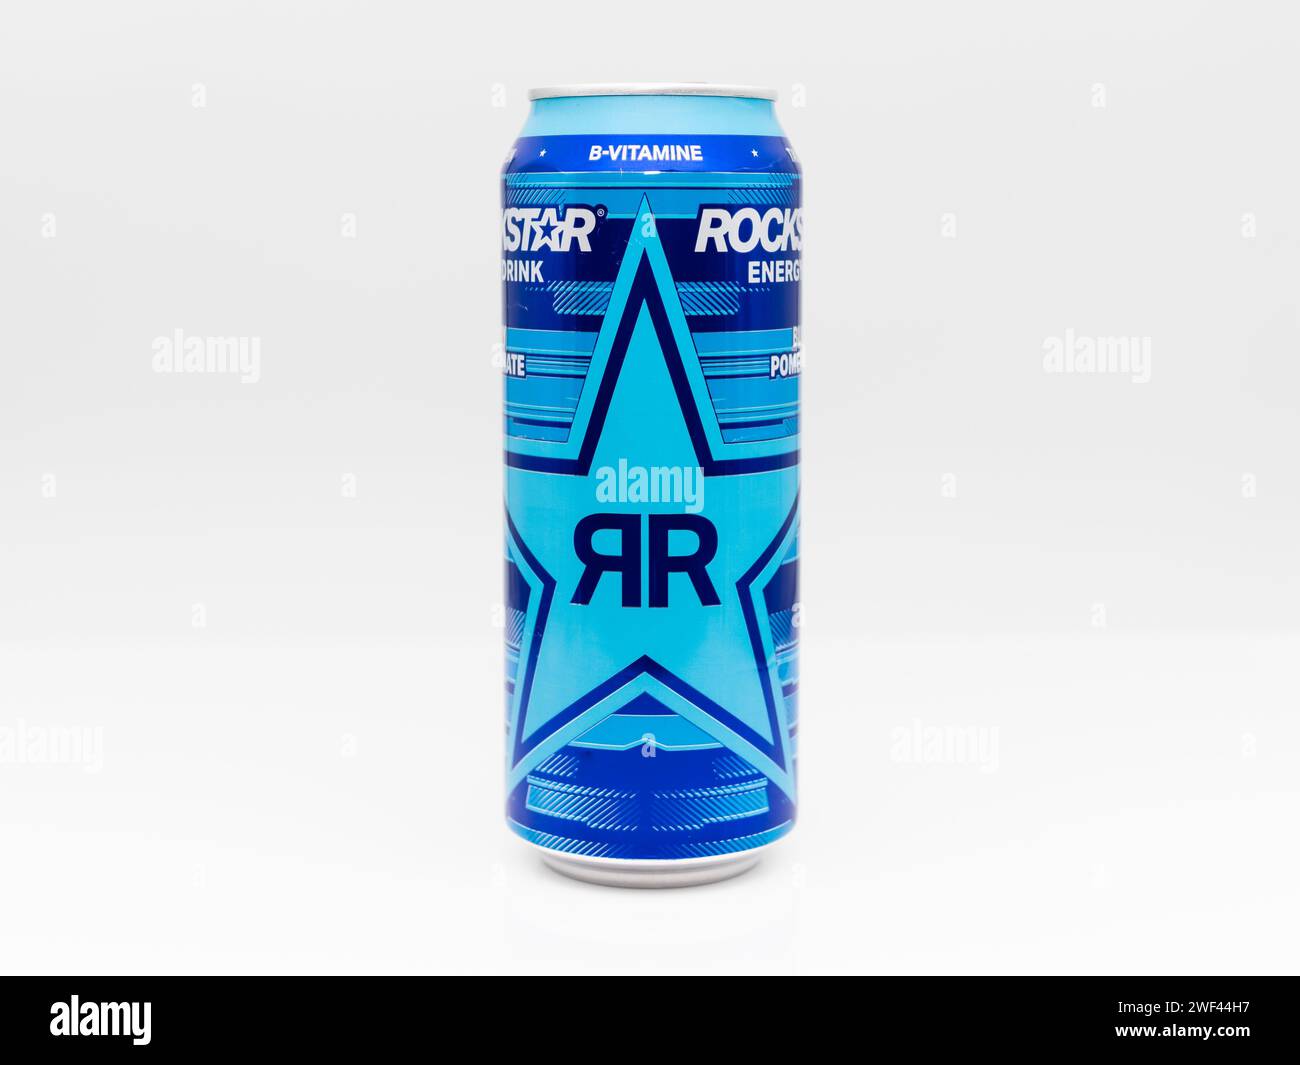 Rockstar Energy Drink Blueberry Granatapfel Acai Aroma Getränk. Die blaue Dose der Xdurance Produktreihe ist beliebt und schmeckt fruchtig. Stockfoto